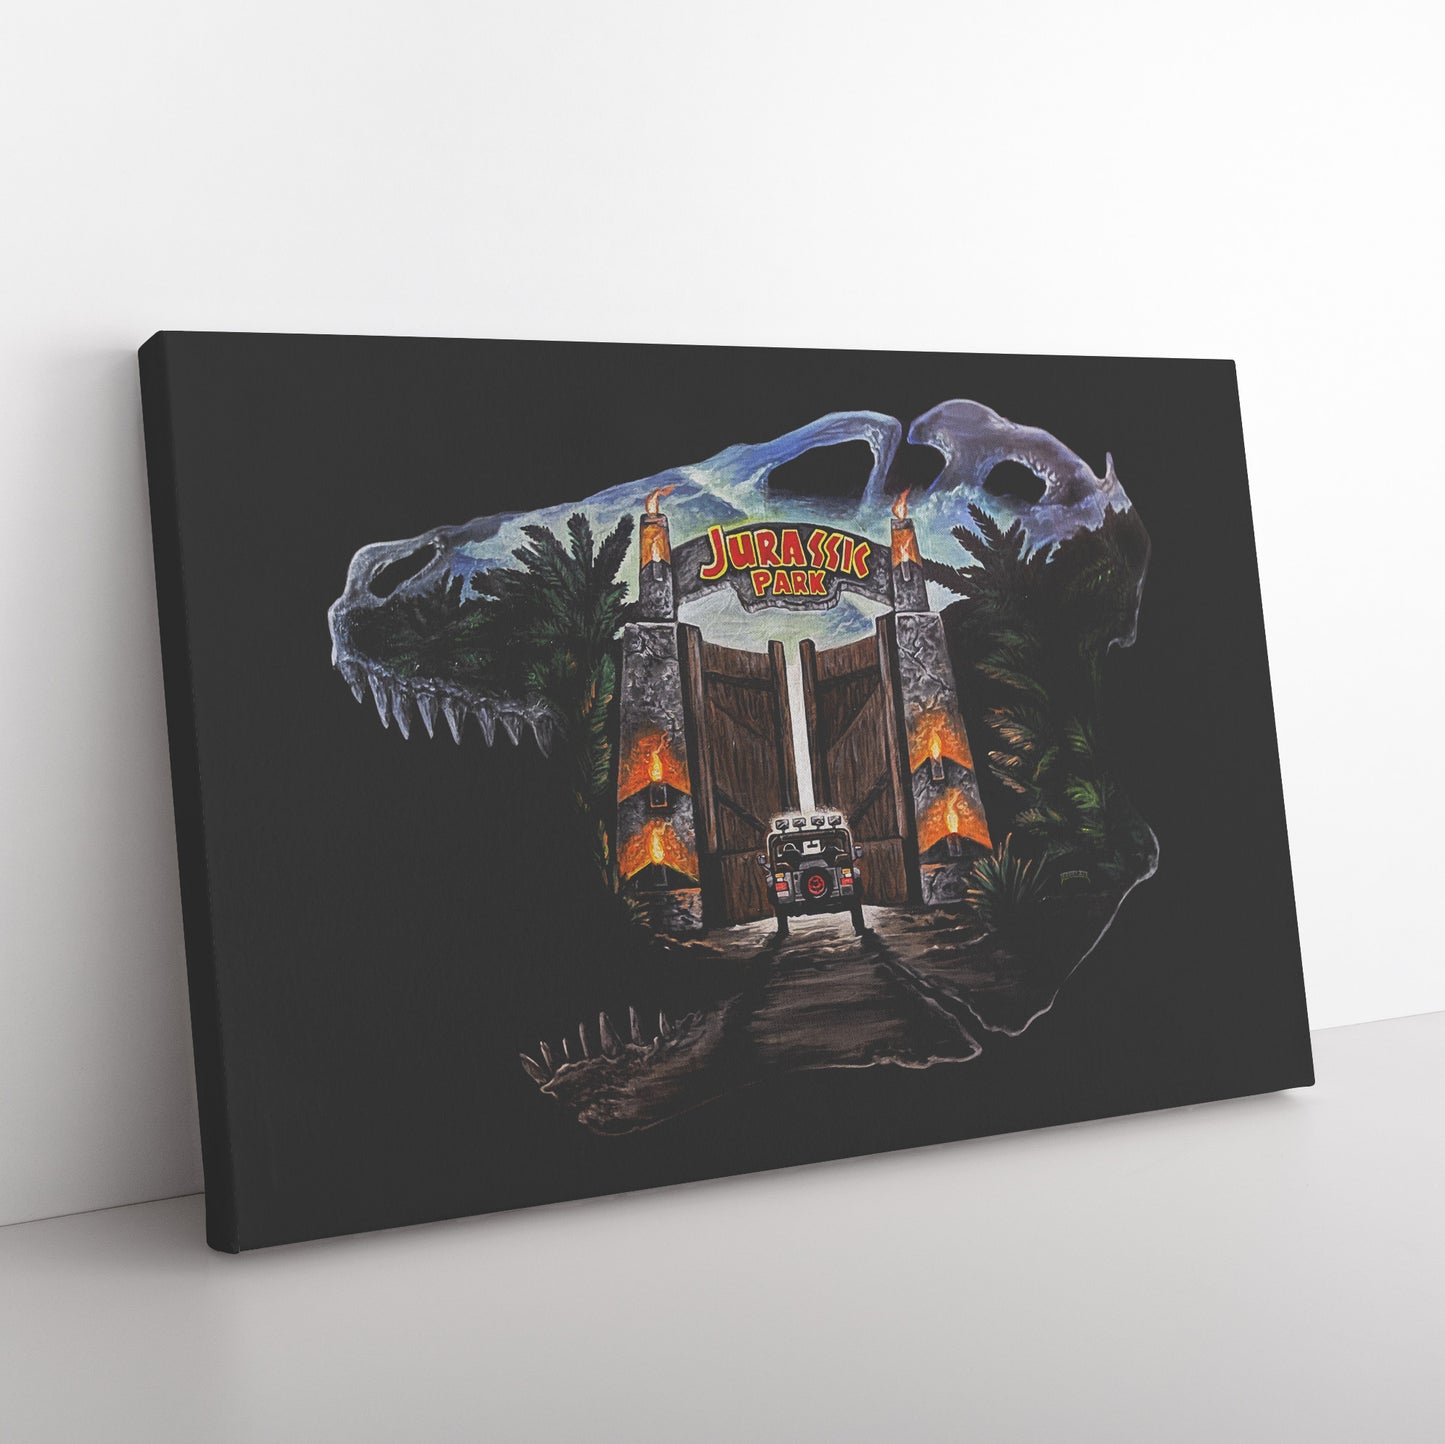 JP T-rex skull by Bobby Zee 32x48in. Canvas Print Wall Art